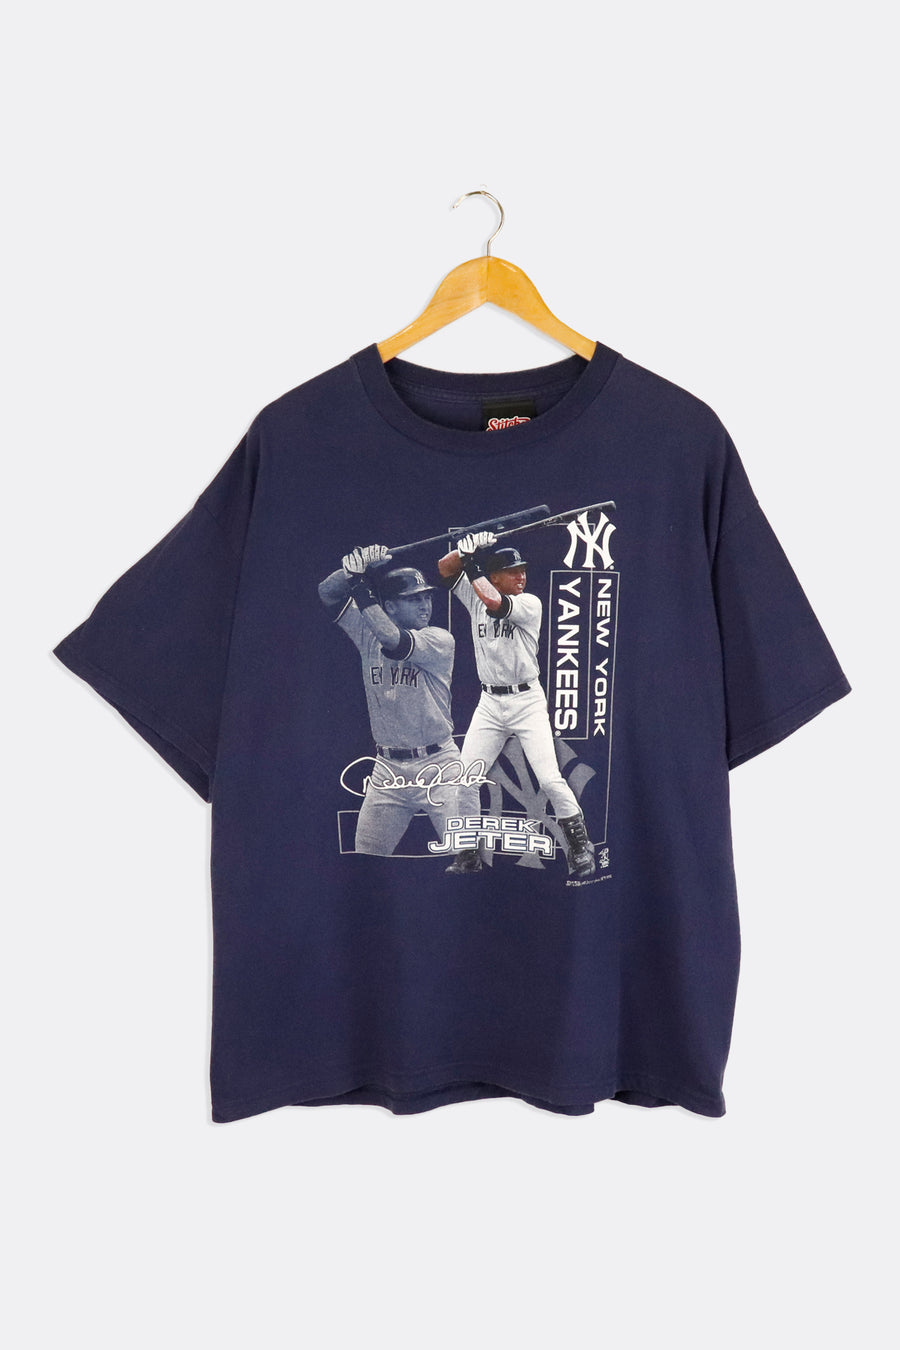 Vintage 2006 MLB New York Yankees Derrick Jeter Portrait Vinyl T Shirt Sz XL